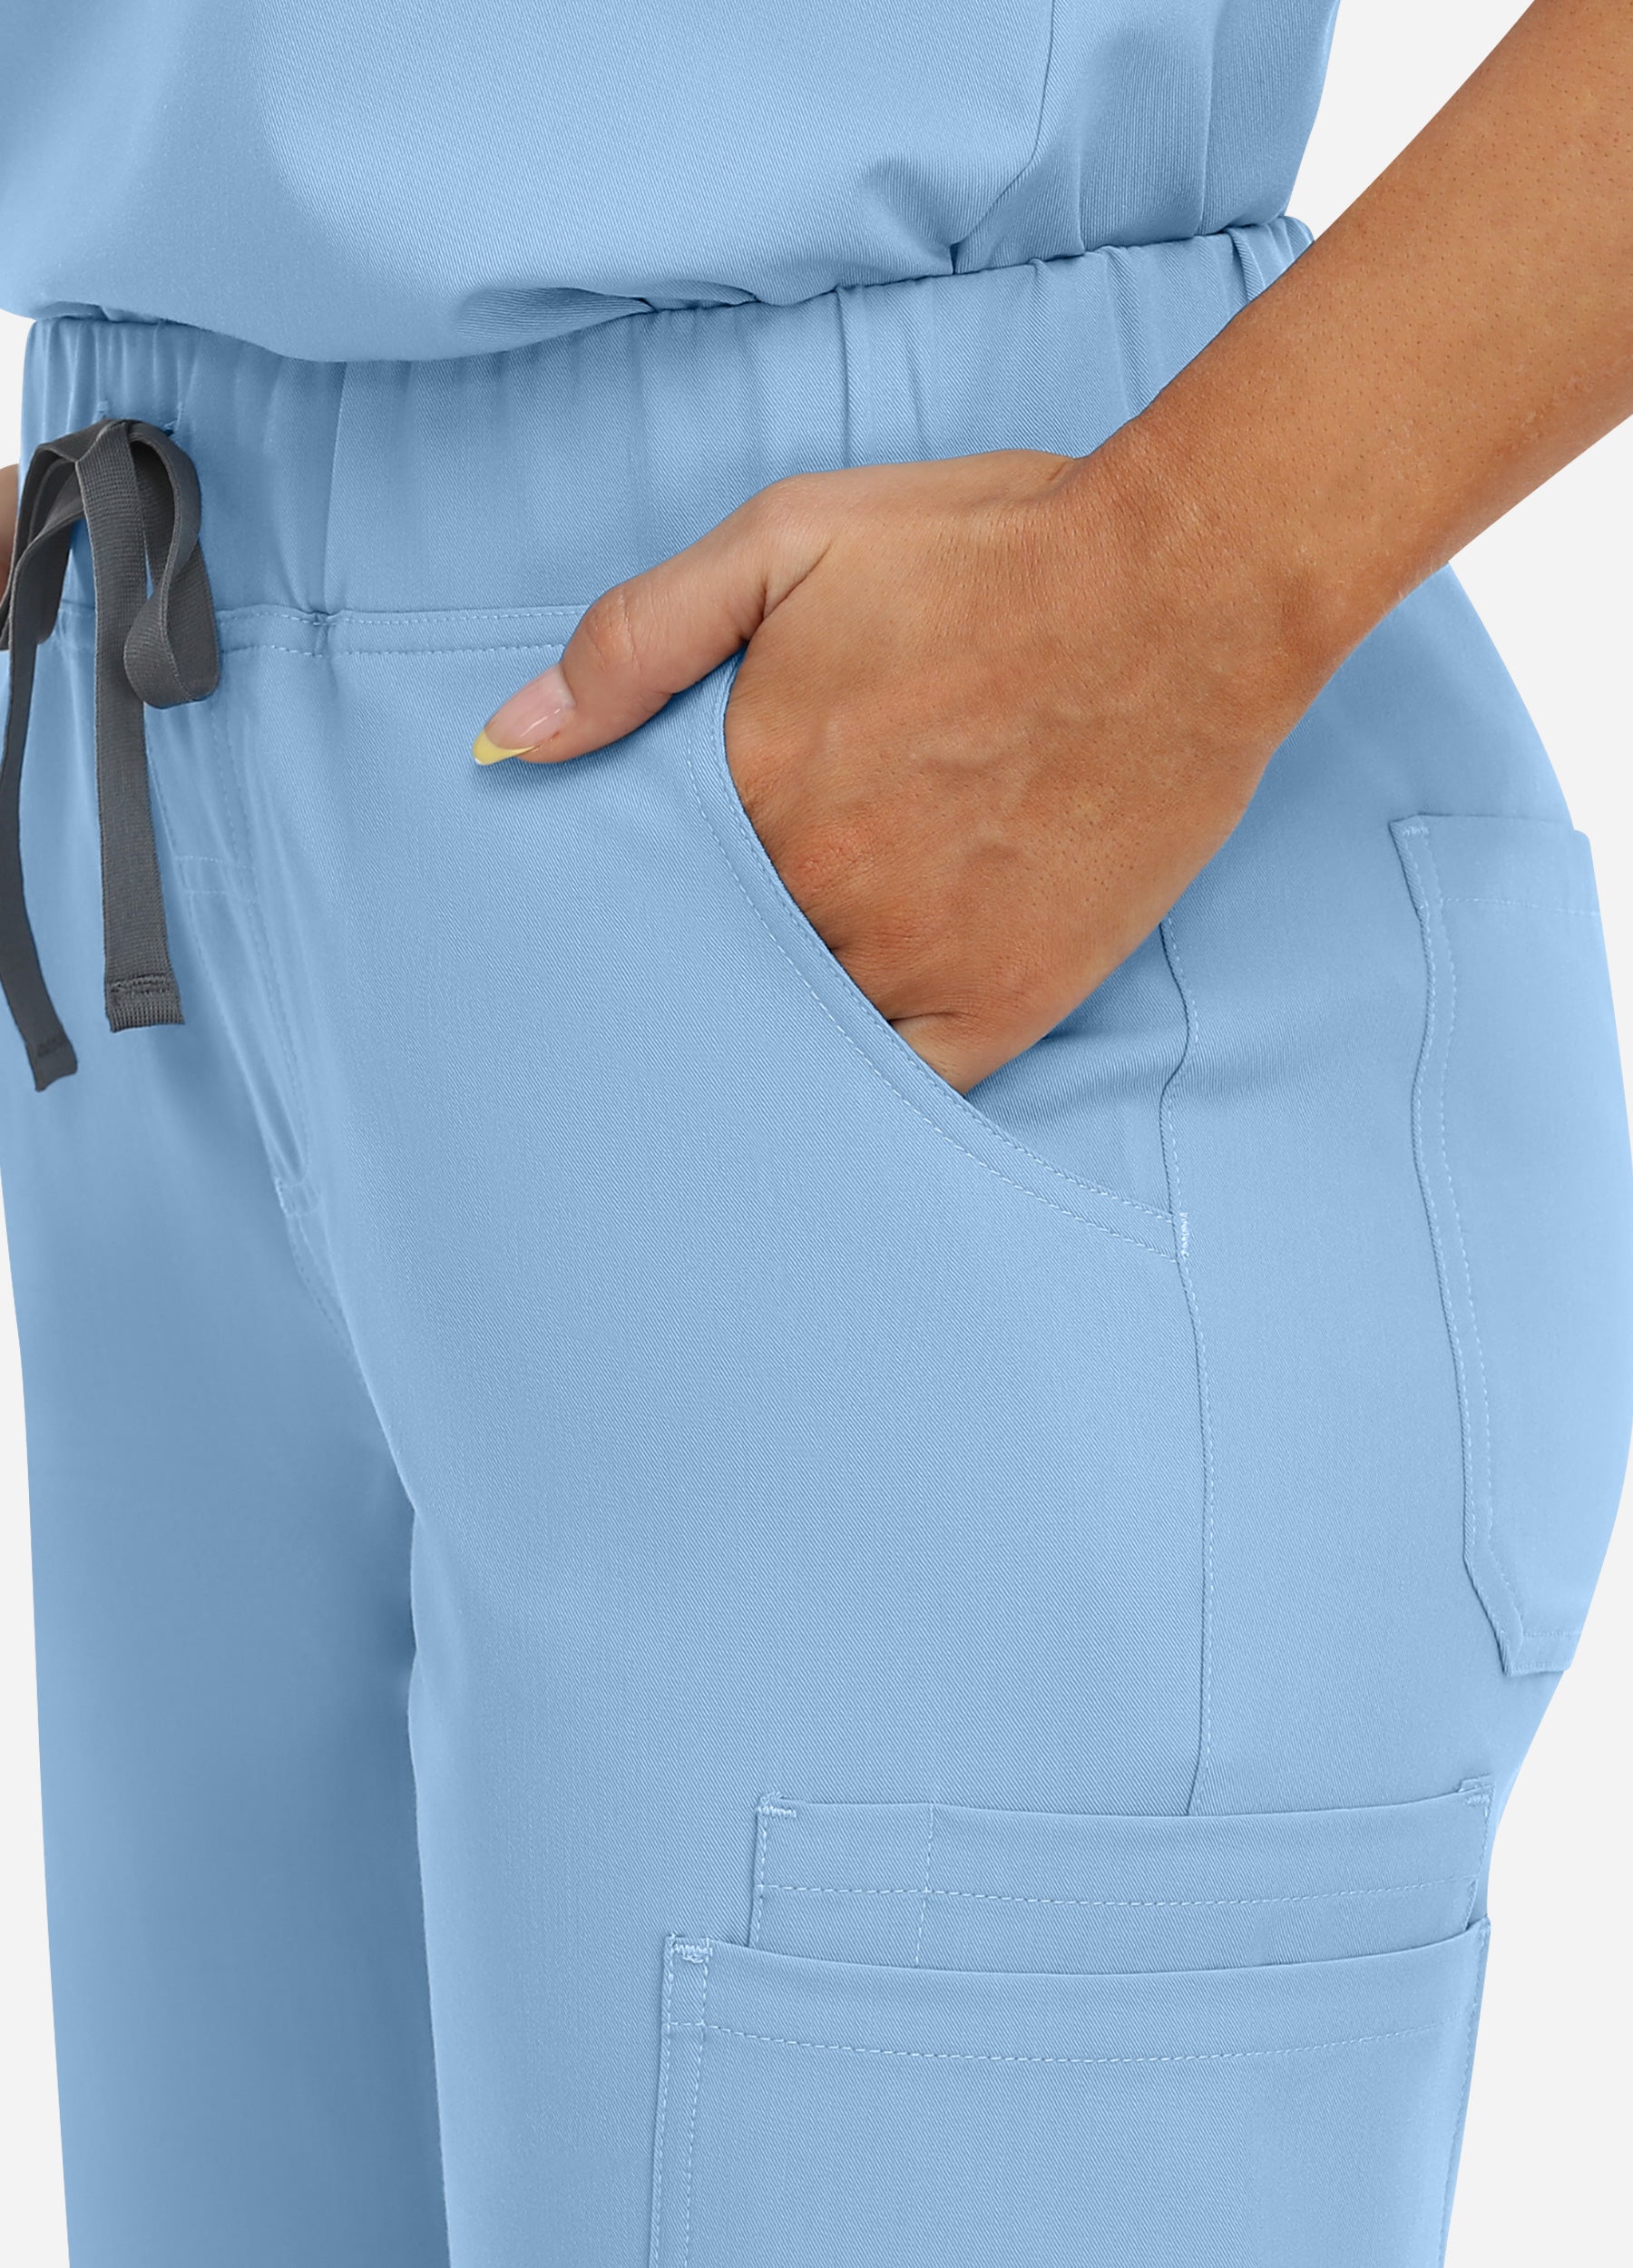 Pantalón médico cónico de 8 bolsillos para mujer